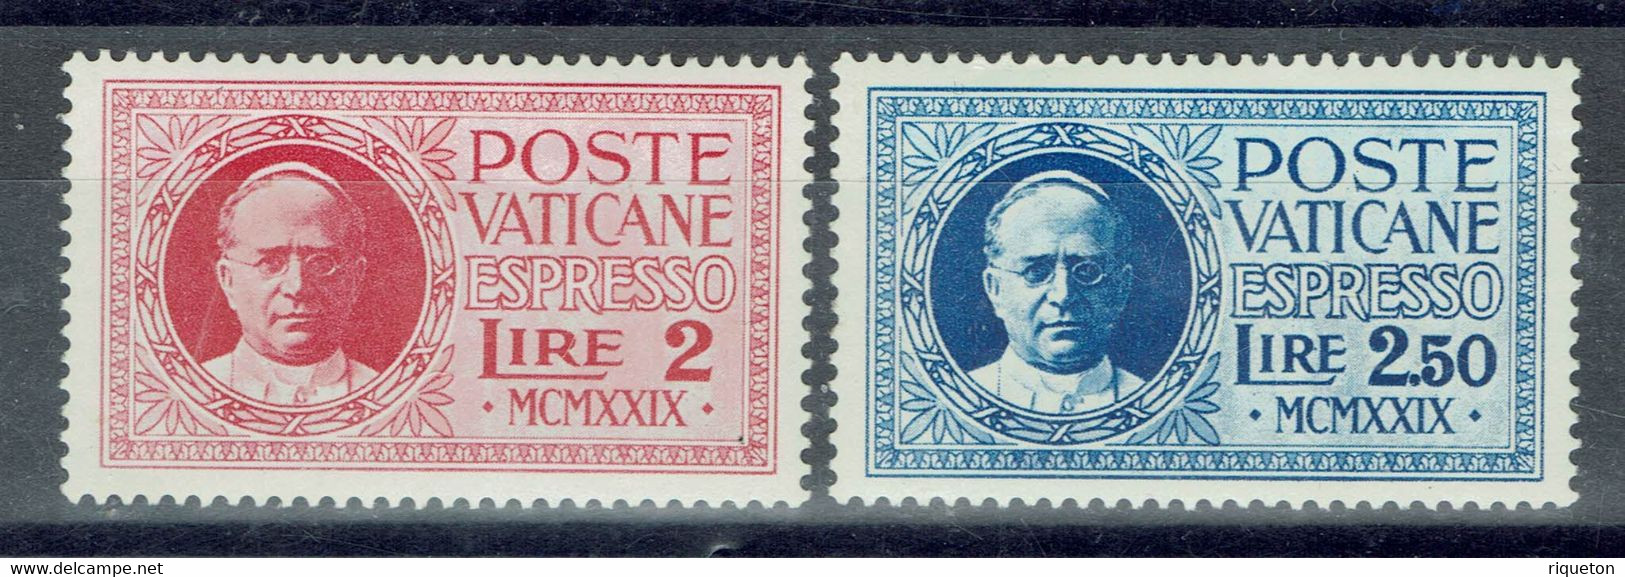 Vatican - 1929 - Timbres Pour Lettres Par Exprès - N° 1 & 2 - Neufs - XX - MNH - - Eilsendung (Eilpost)